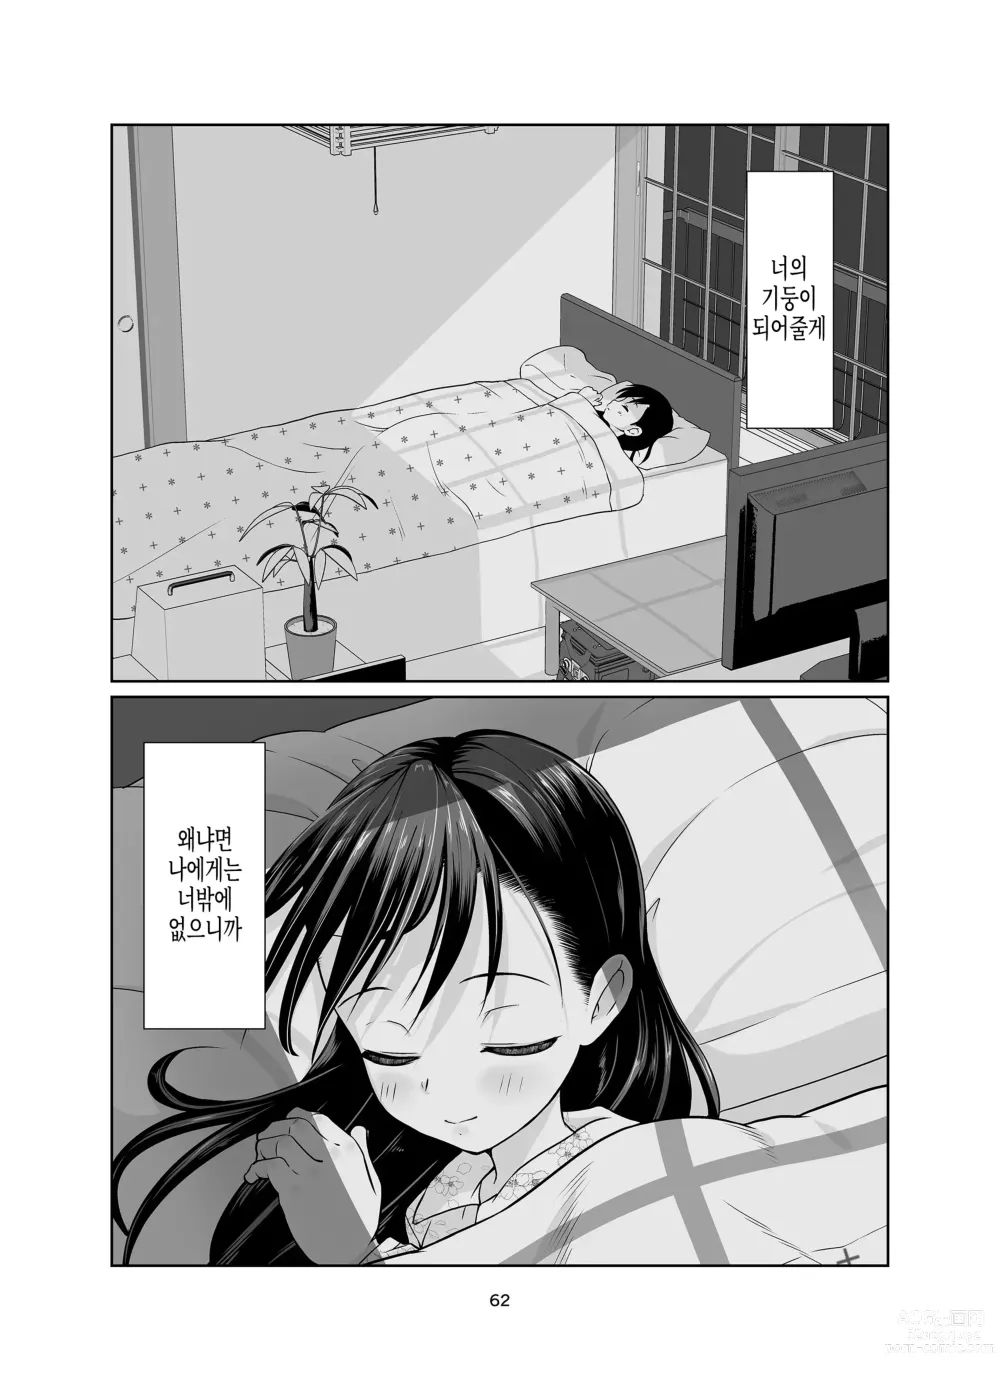 Page 62 of doujinshi Kenryoku Kakusa Lovers Lolicon no Koibito ni Natta 9-saiji